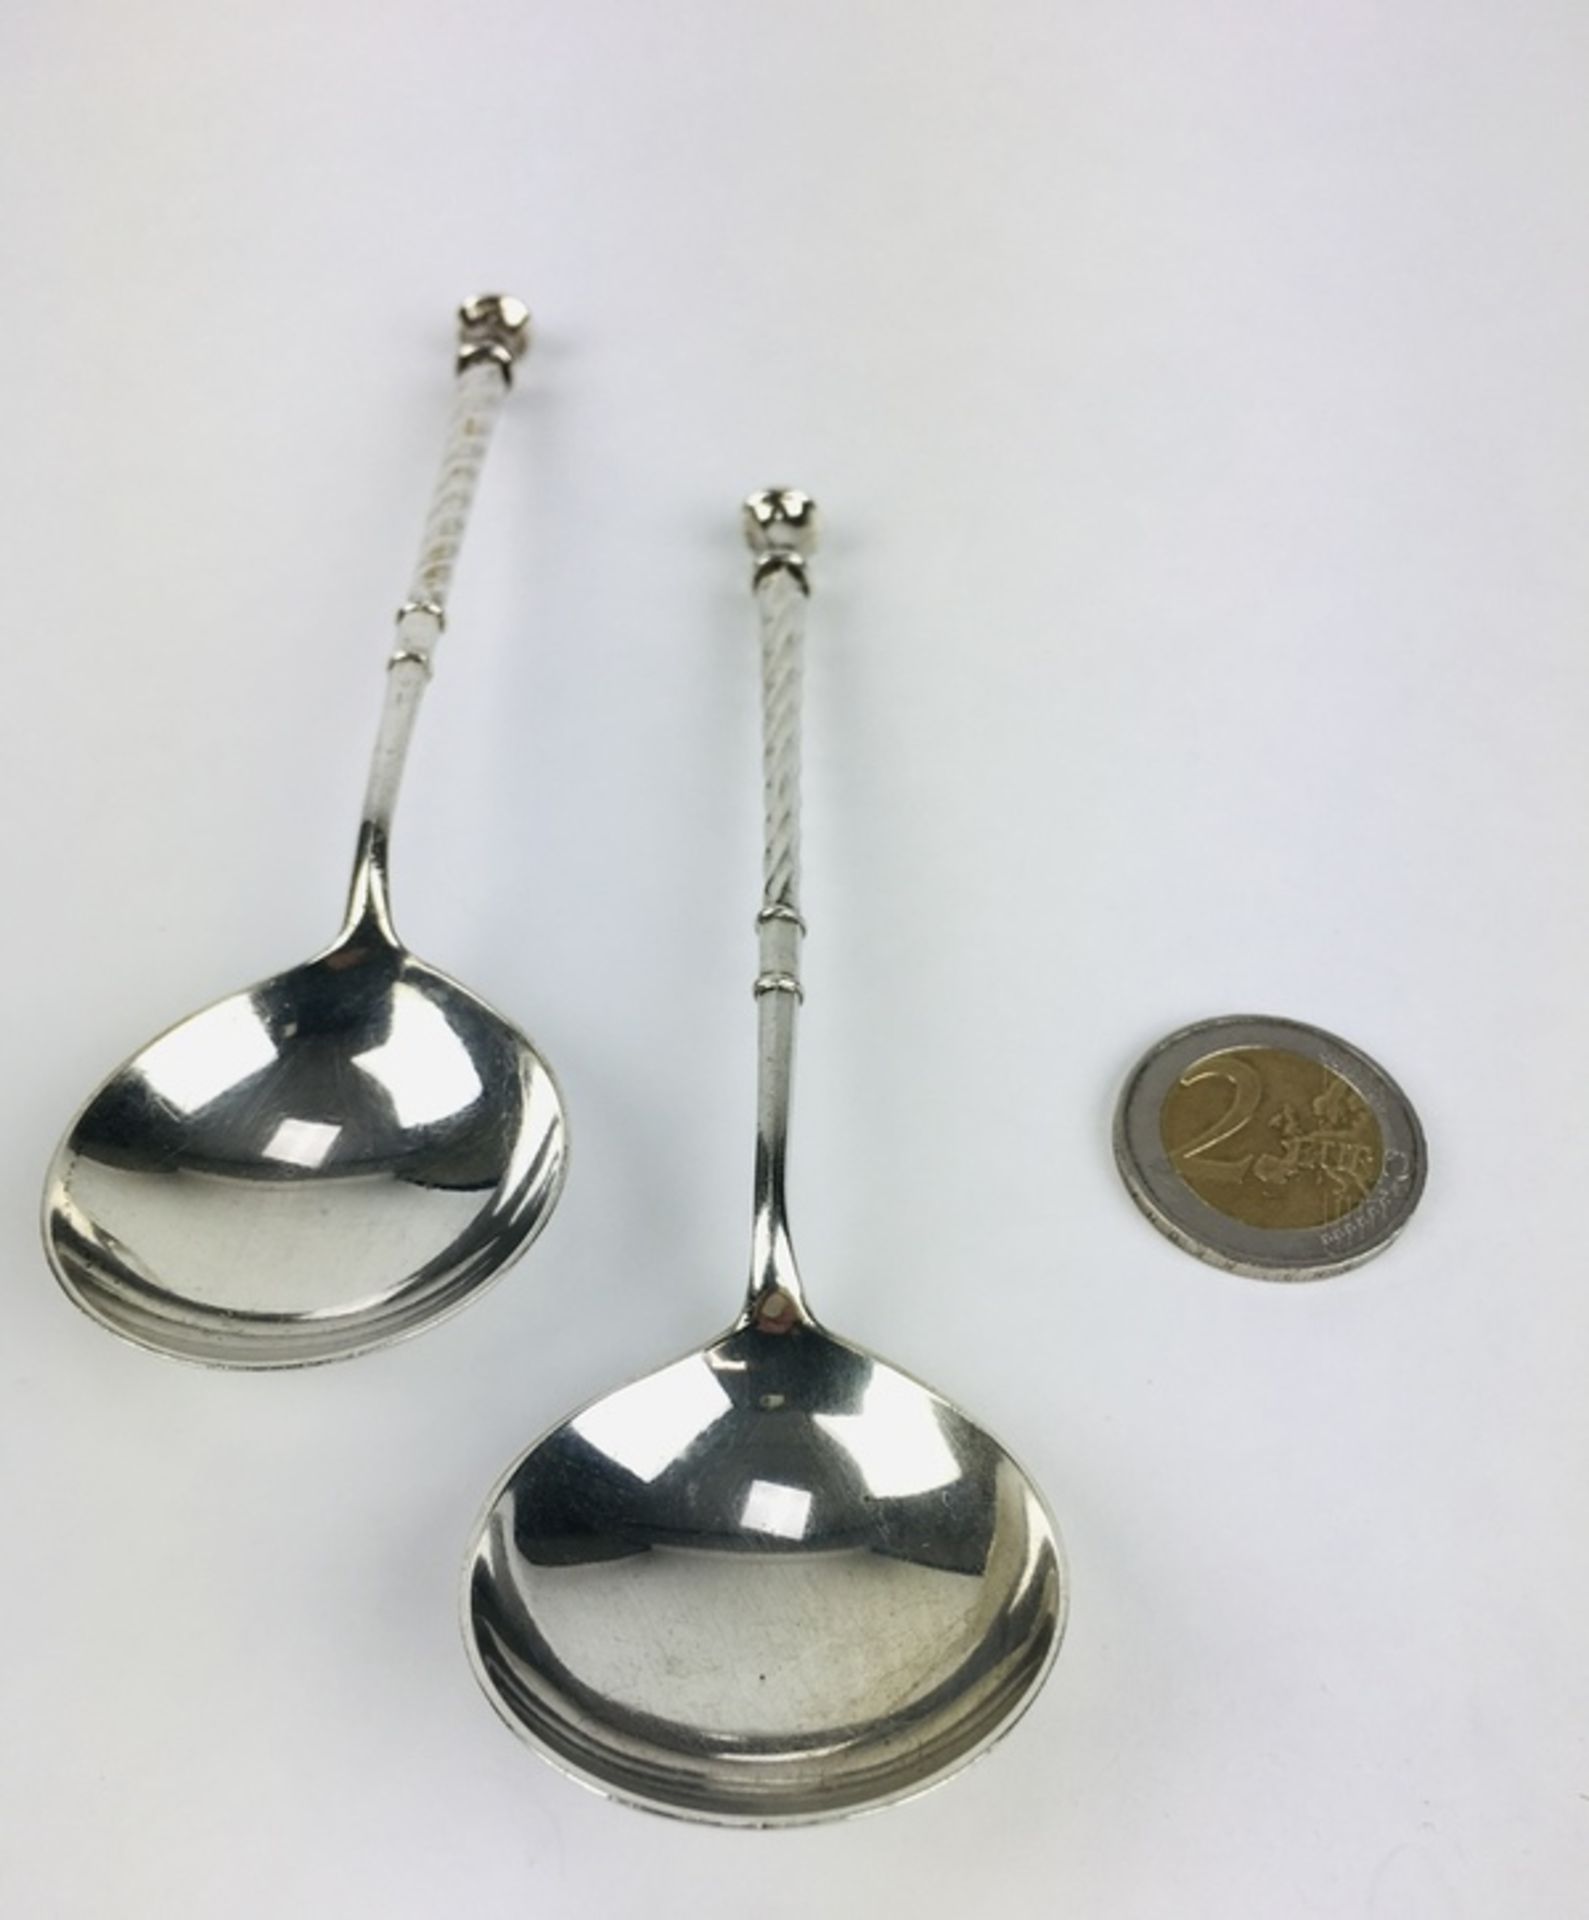 (Zilver) LepelsTwee zilveren lepels. Conditie: In goede staat. Afmetingen: Lengte 14 cm en gewi - Image 2 of 4